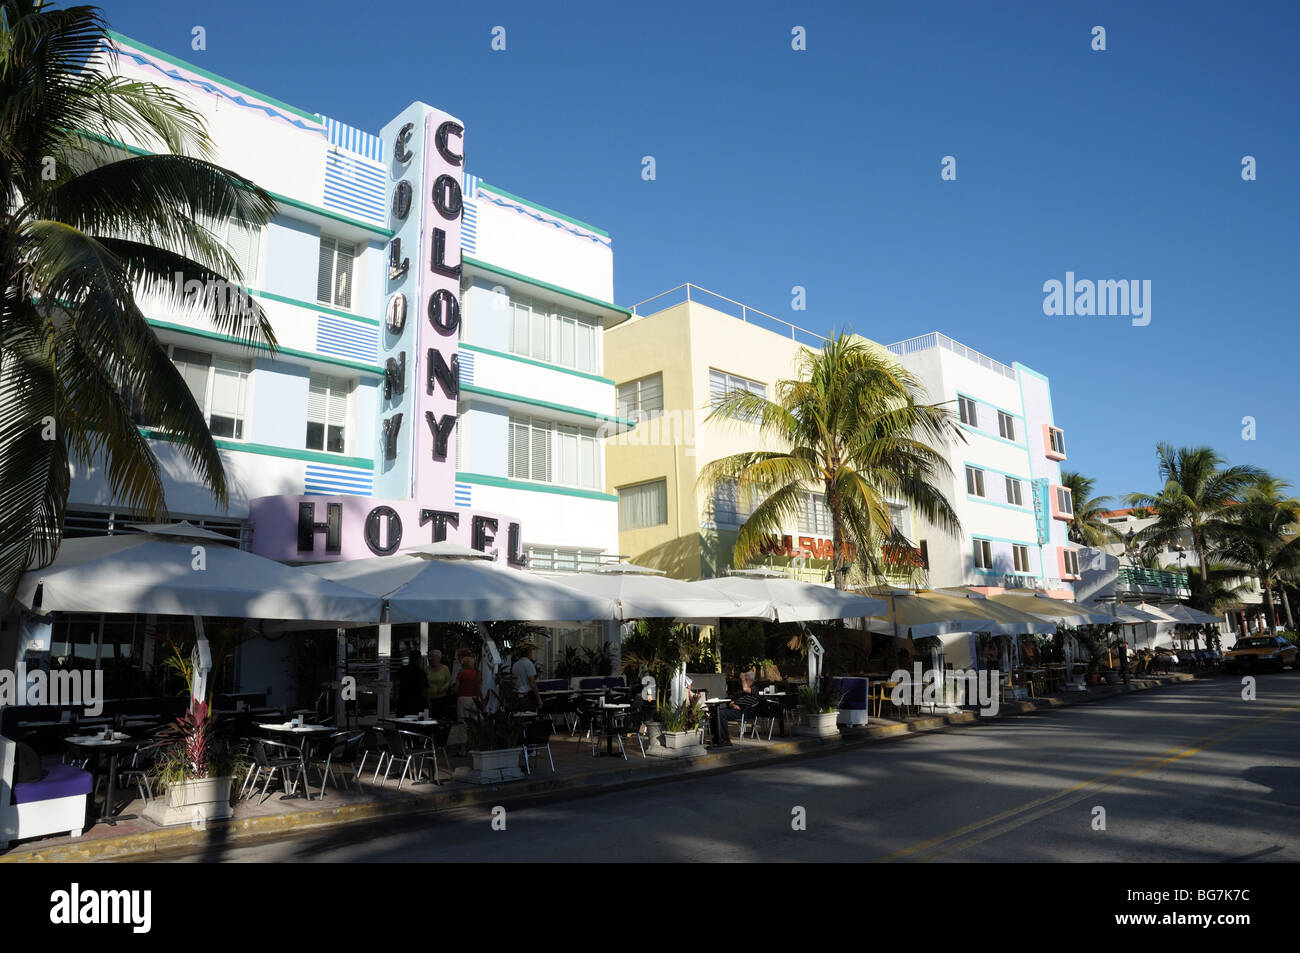 Colony Hotel dans l'Ocean Drive, Miami quartier Art déco de South Beach, Florida USA Banque D'Images